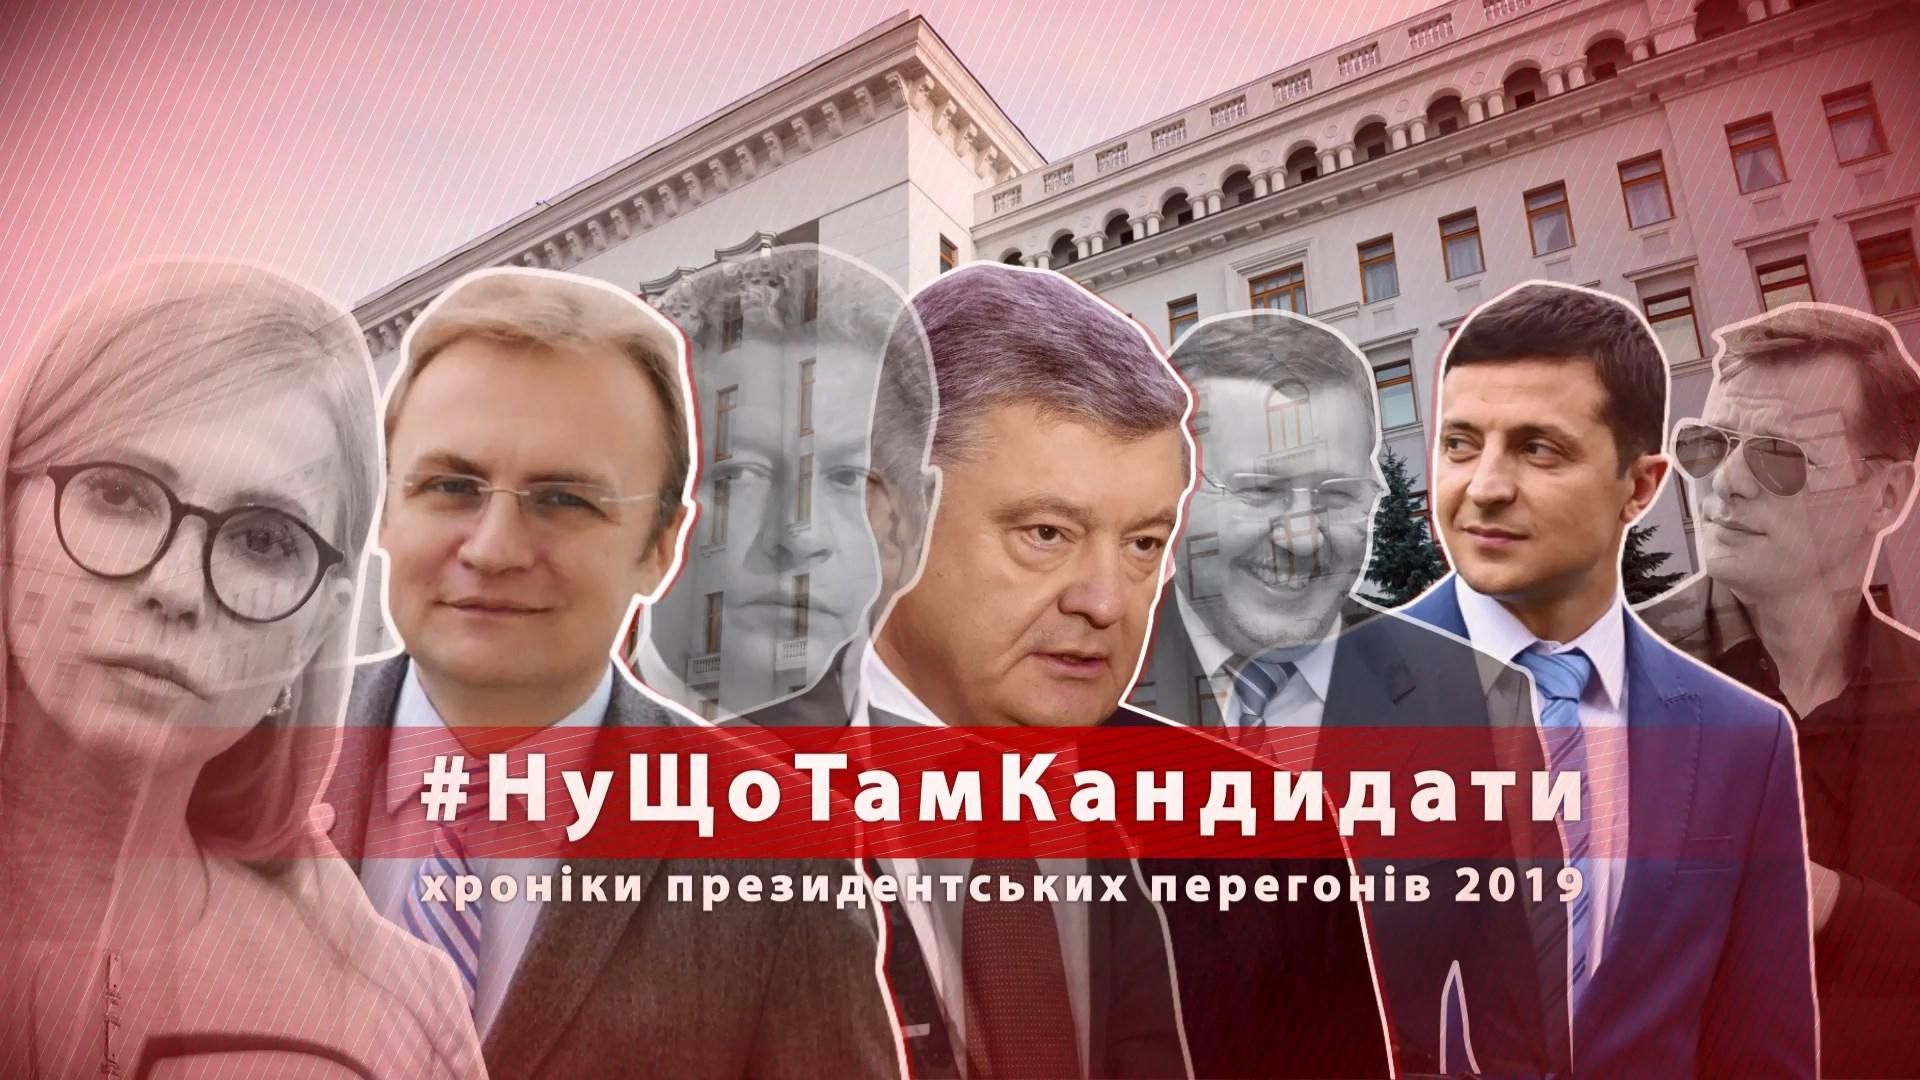 Хот-дог для Тимошенко и "никакой агитации" за Зеленского:как политики привлекают к себе внимание